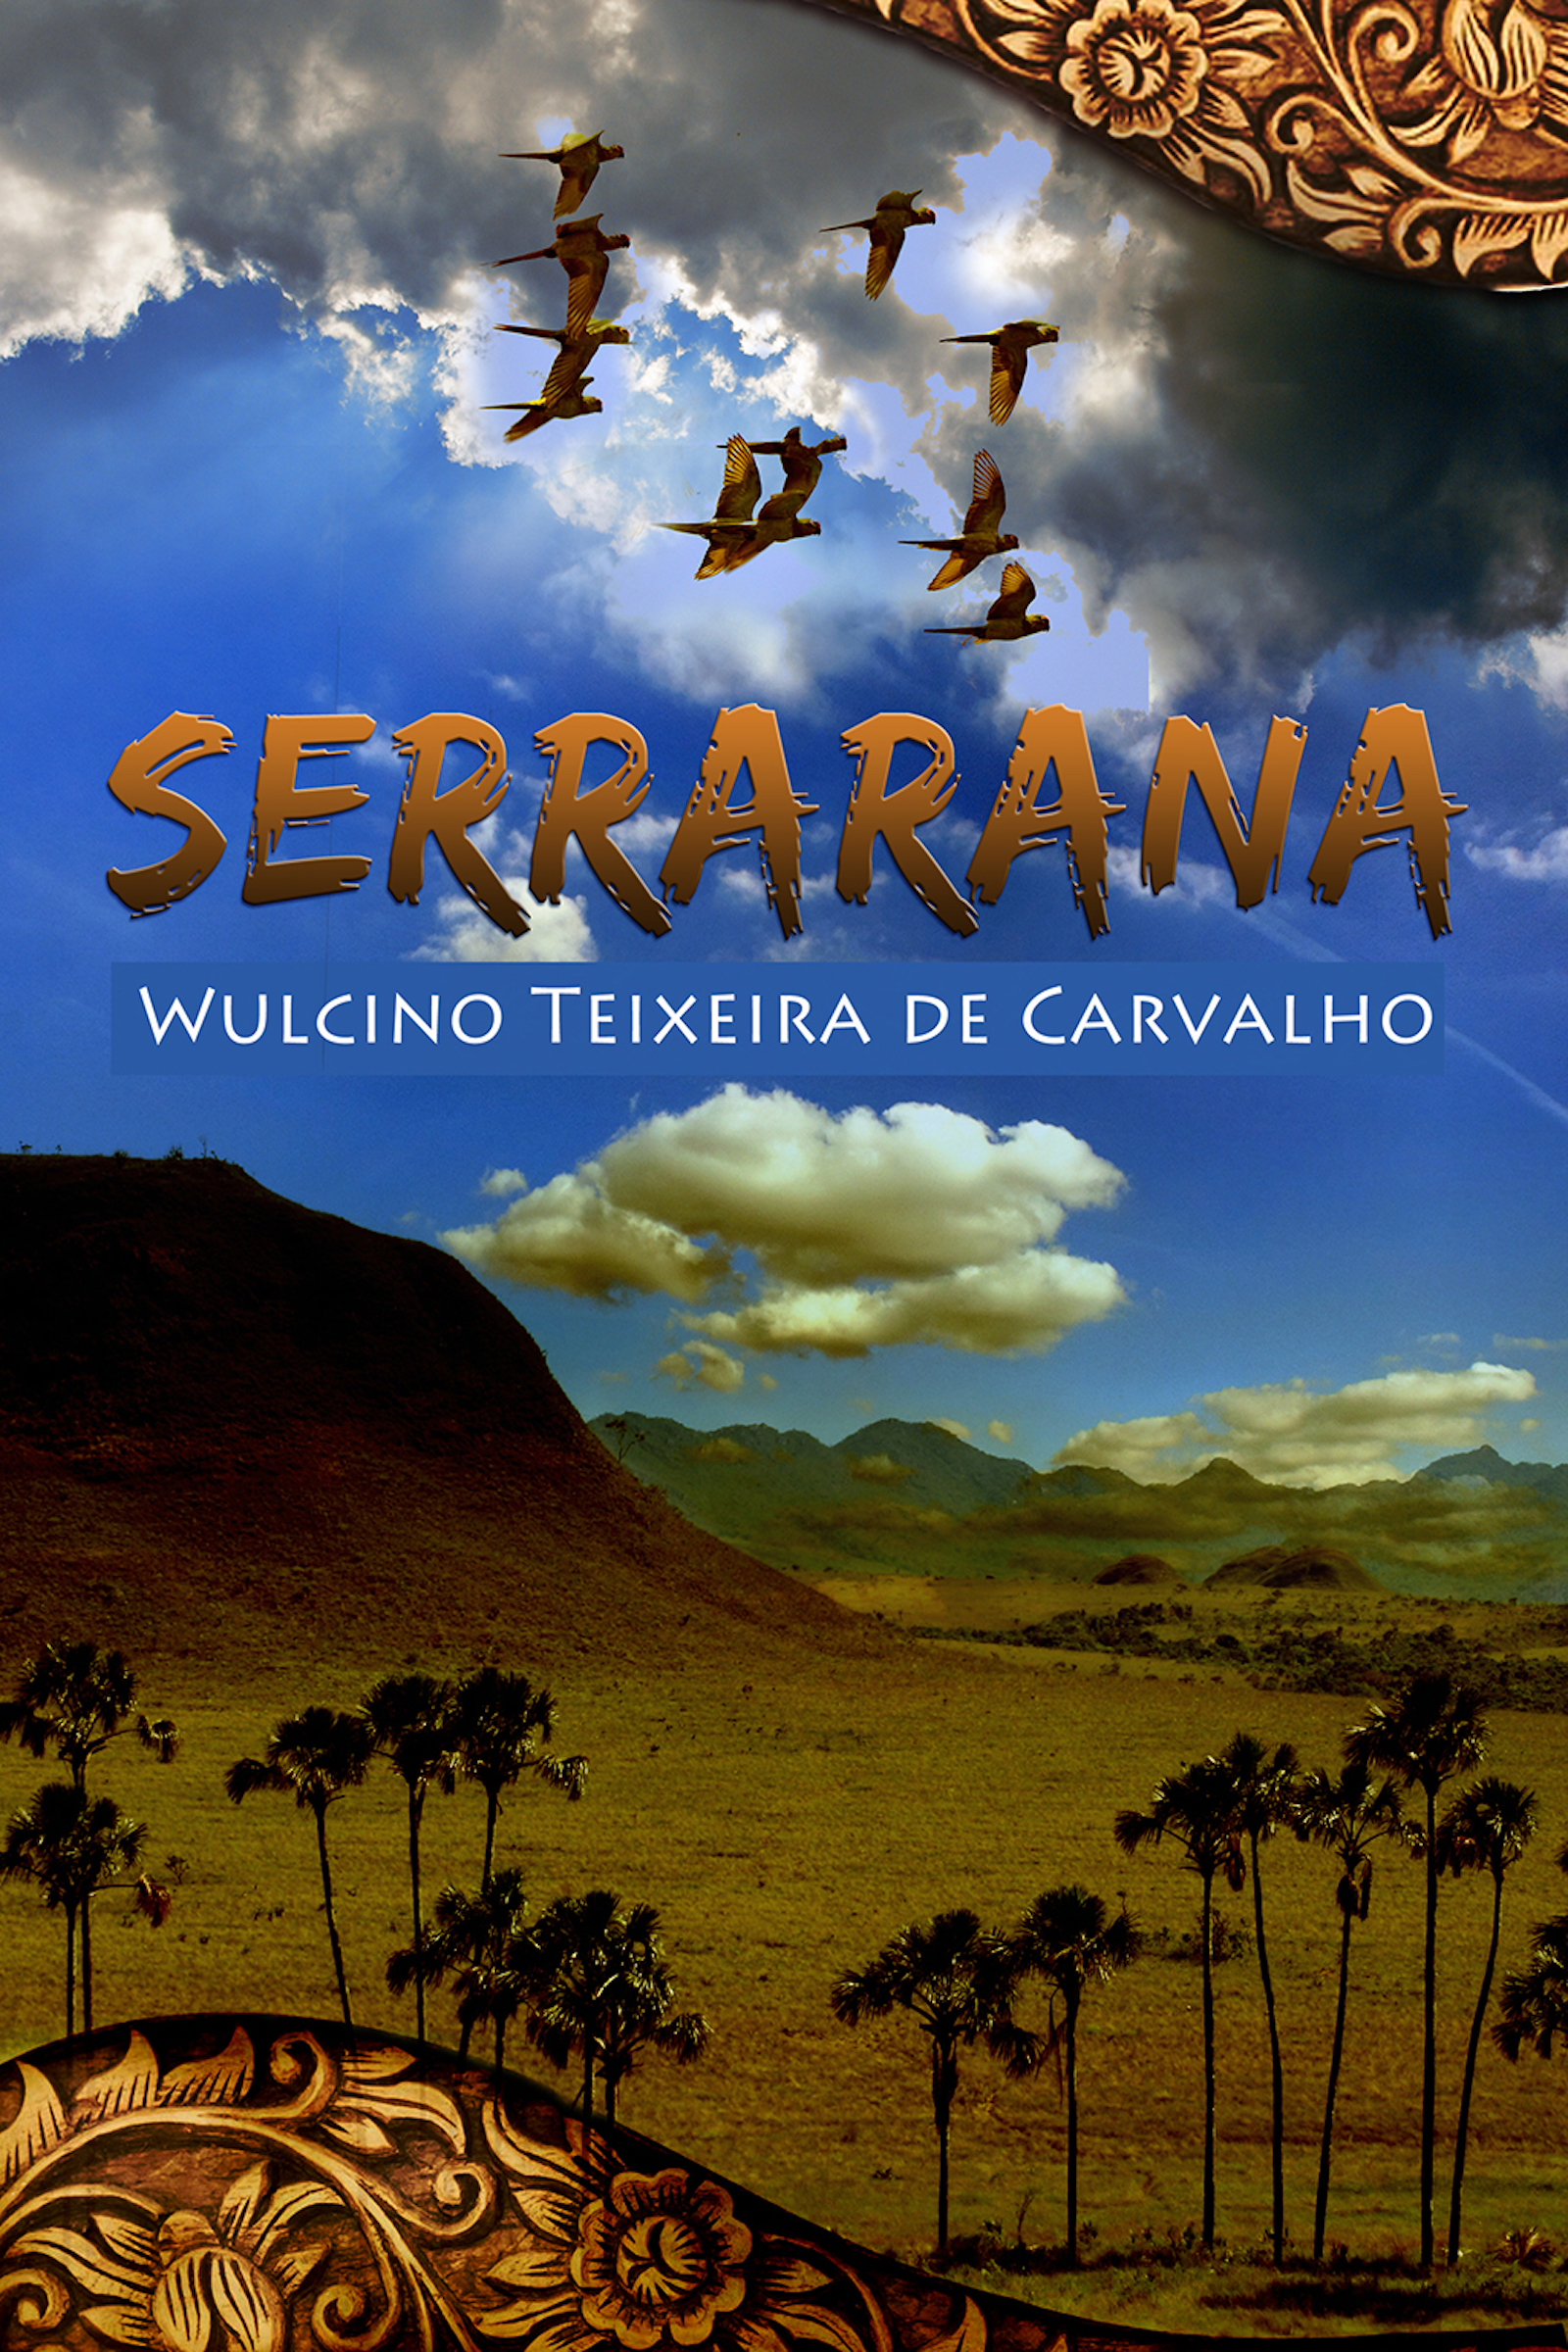 Serrarana